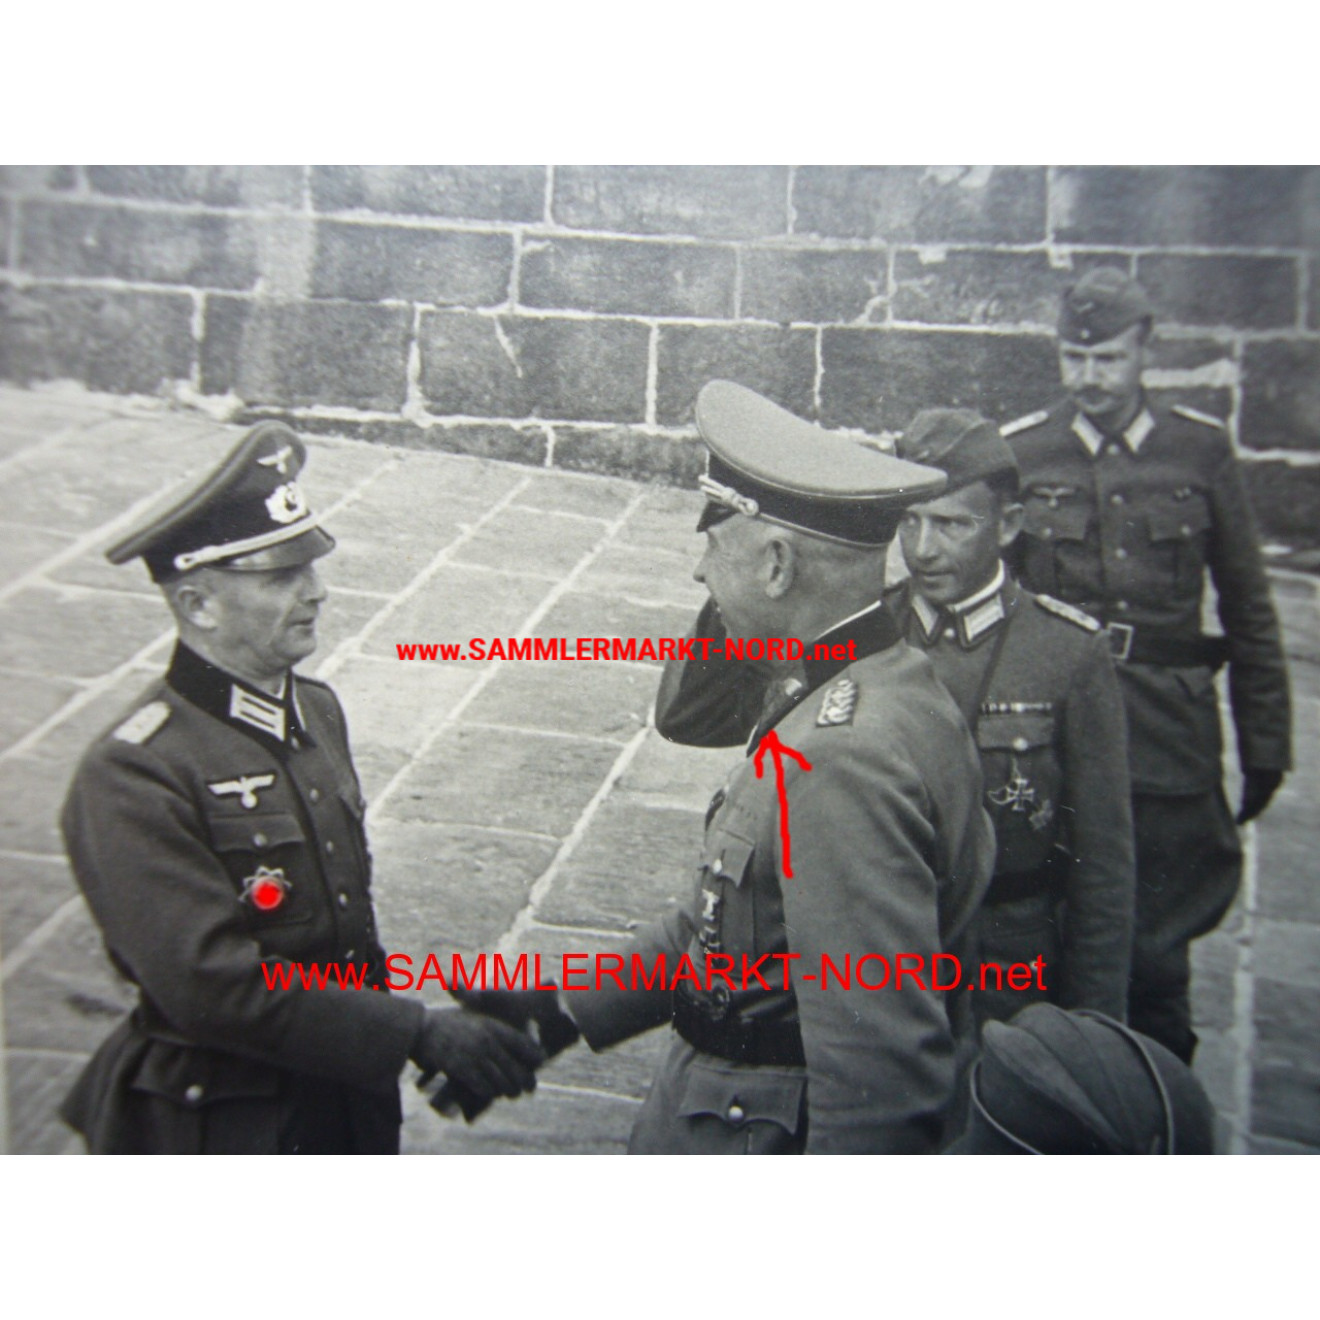 Wehrmacht - Unbekannter General und Major mit Deutsche Kreuz in 